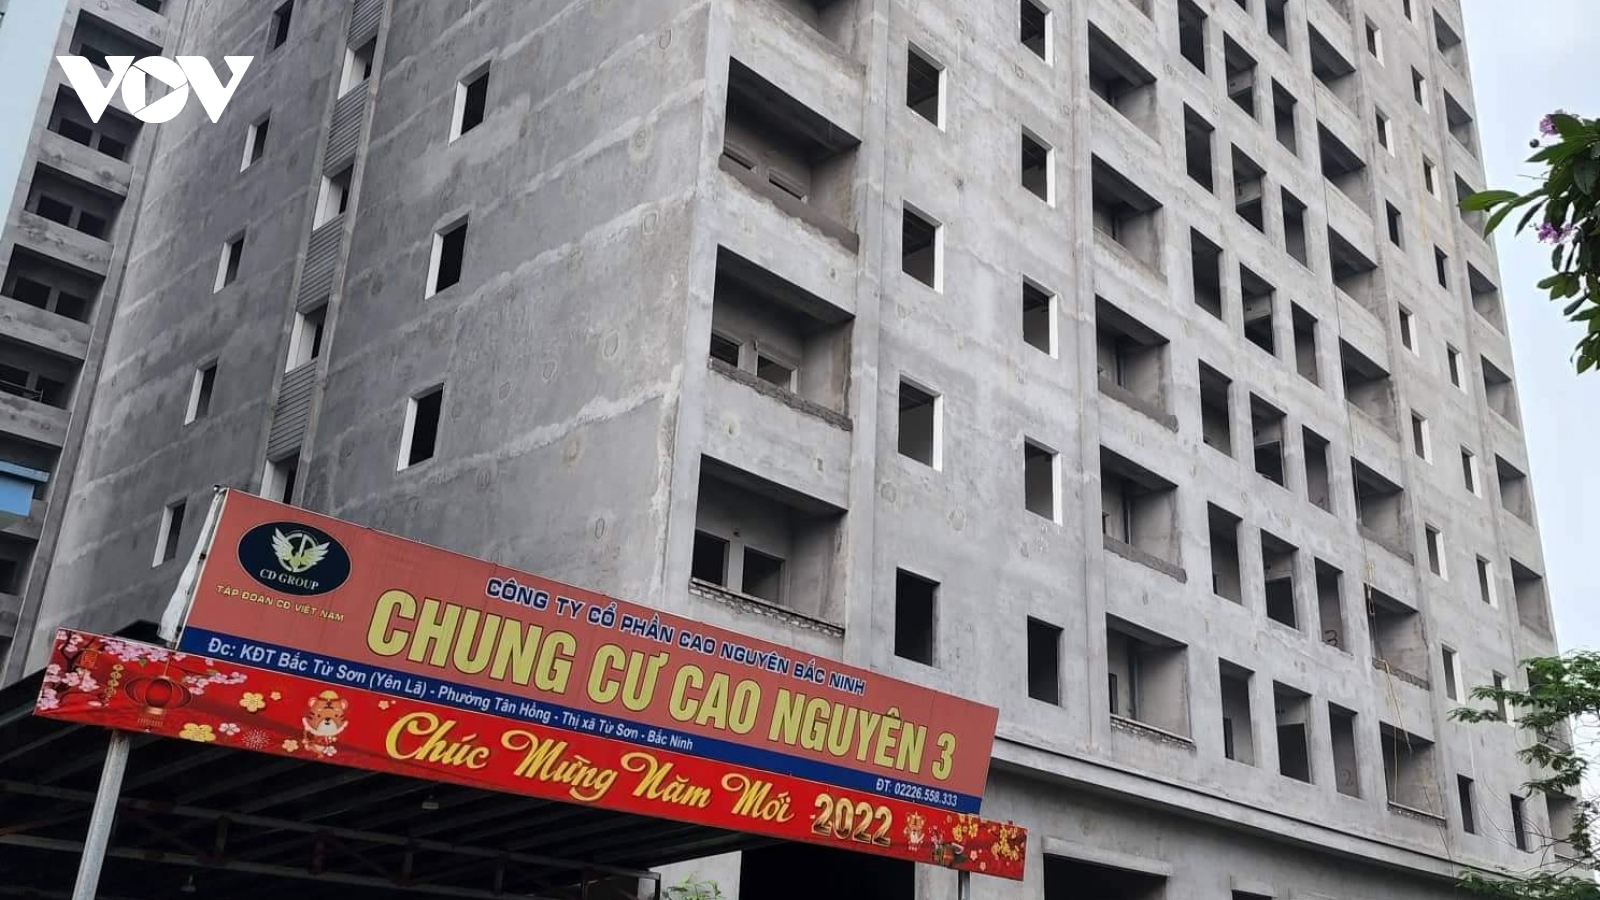 Bán nhà chưa đúng đối tượng, 2 doanh nghiệp ở Bắc Ninh bị xử phạt 340 triệu đồng